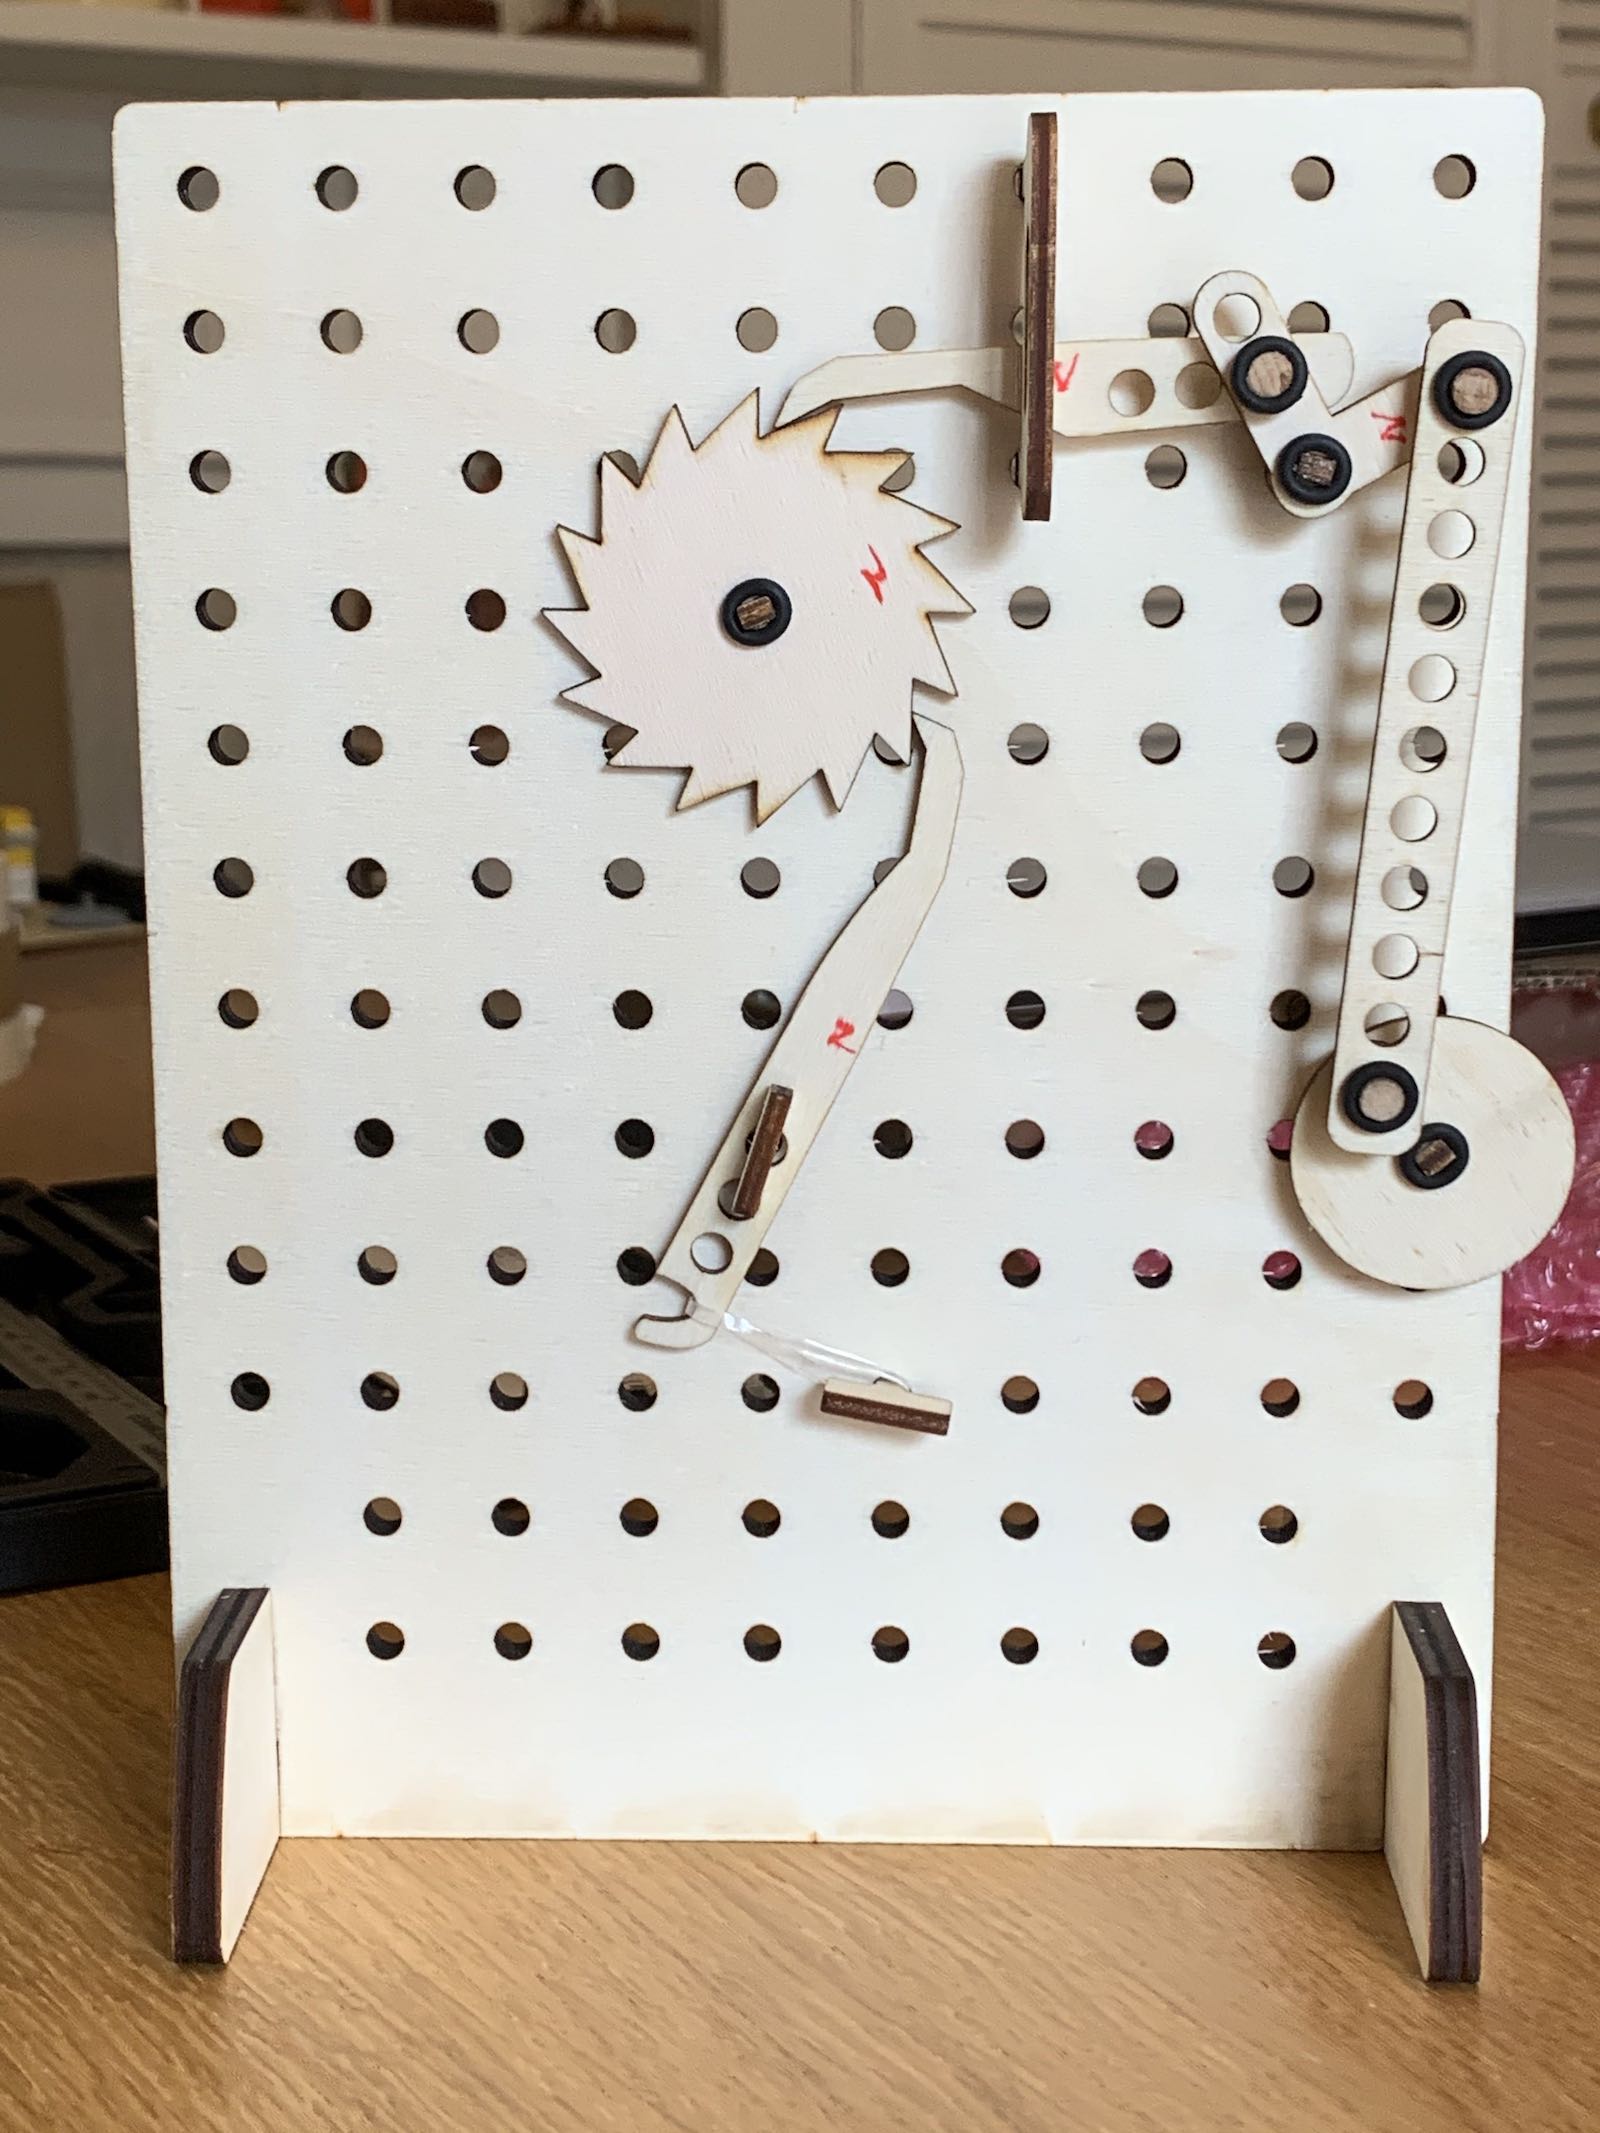 Automata Tinkering Kit